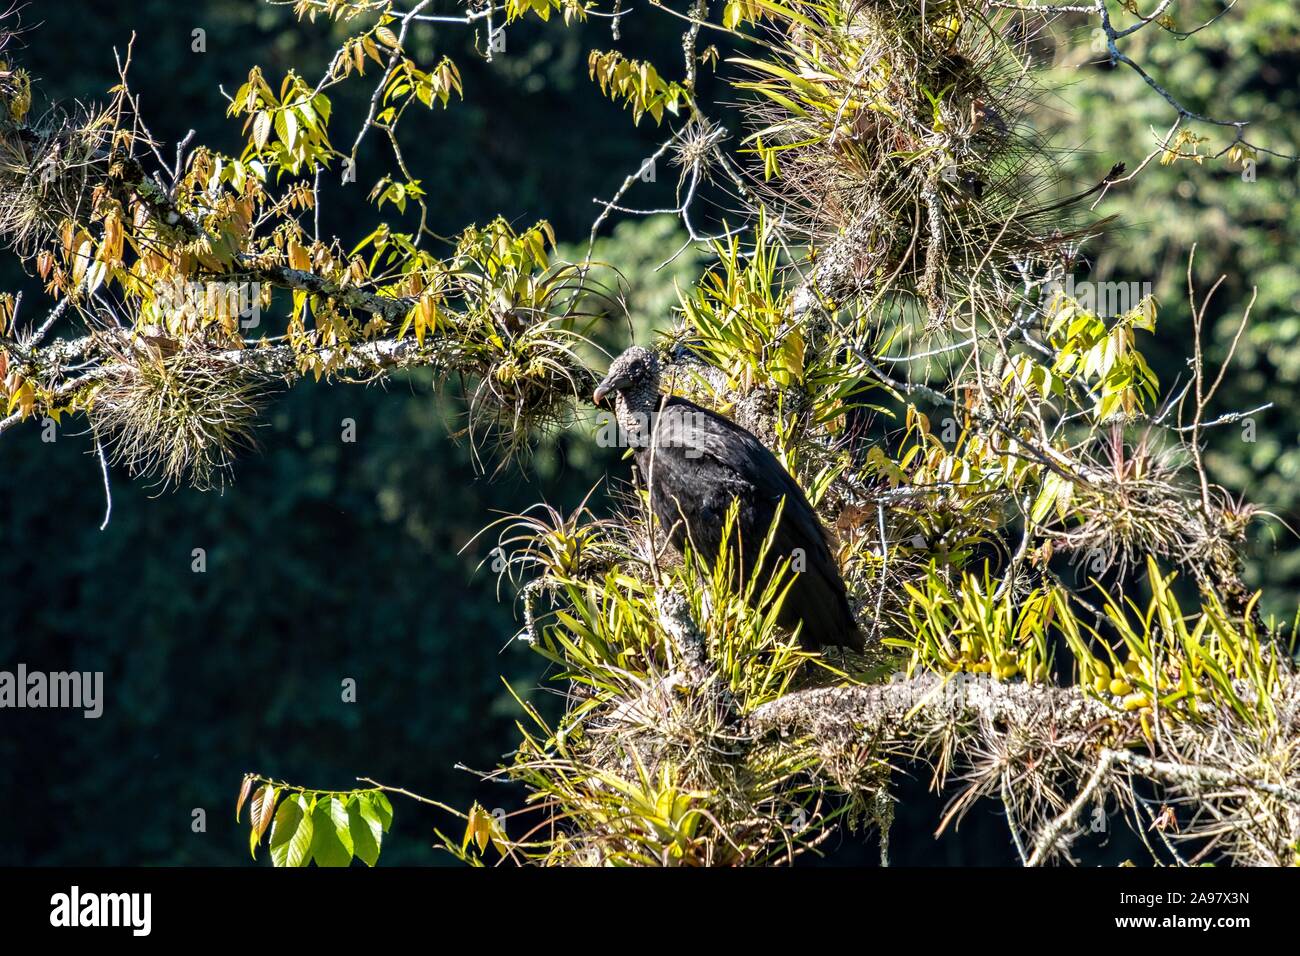 American black vultures gather in a tree at the Cascada de Texolo waterfall near Xico, Veracruz, Mexico. Stock Photo